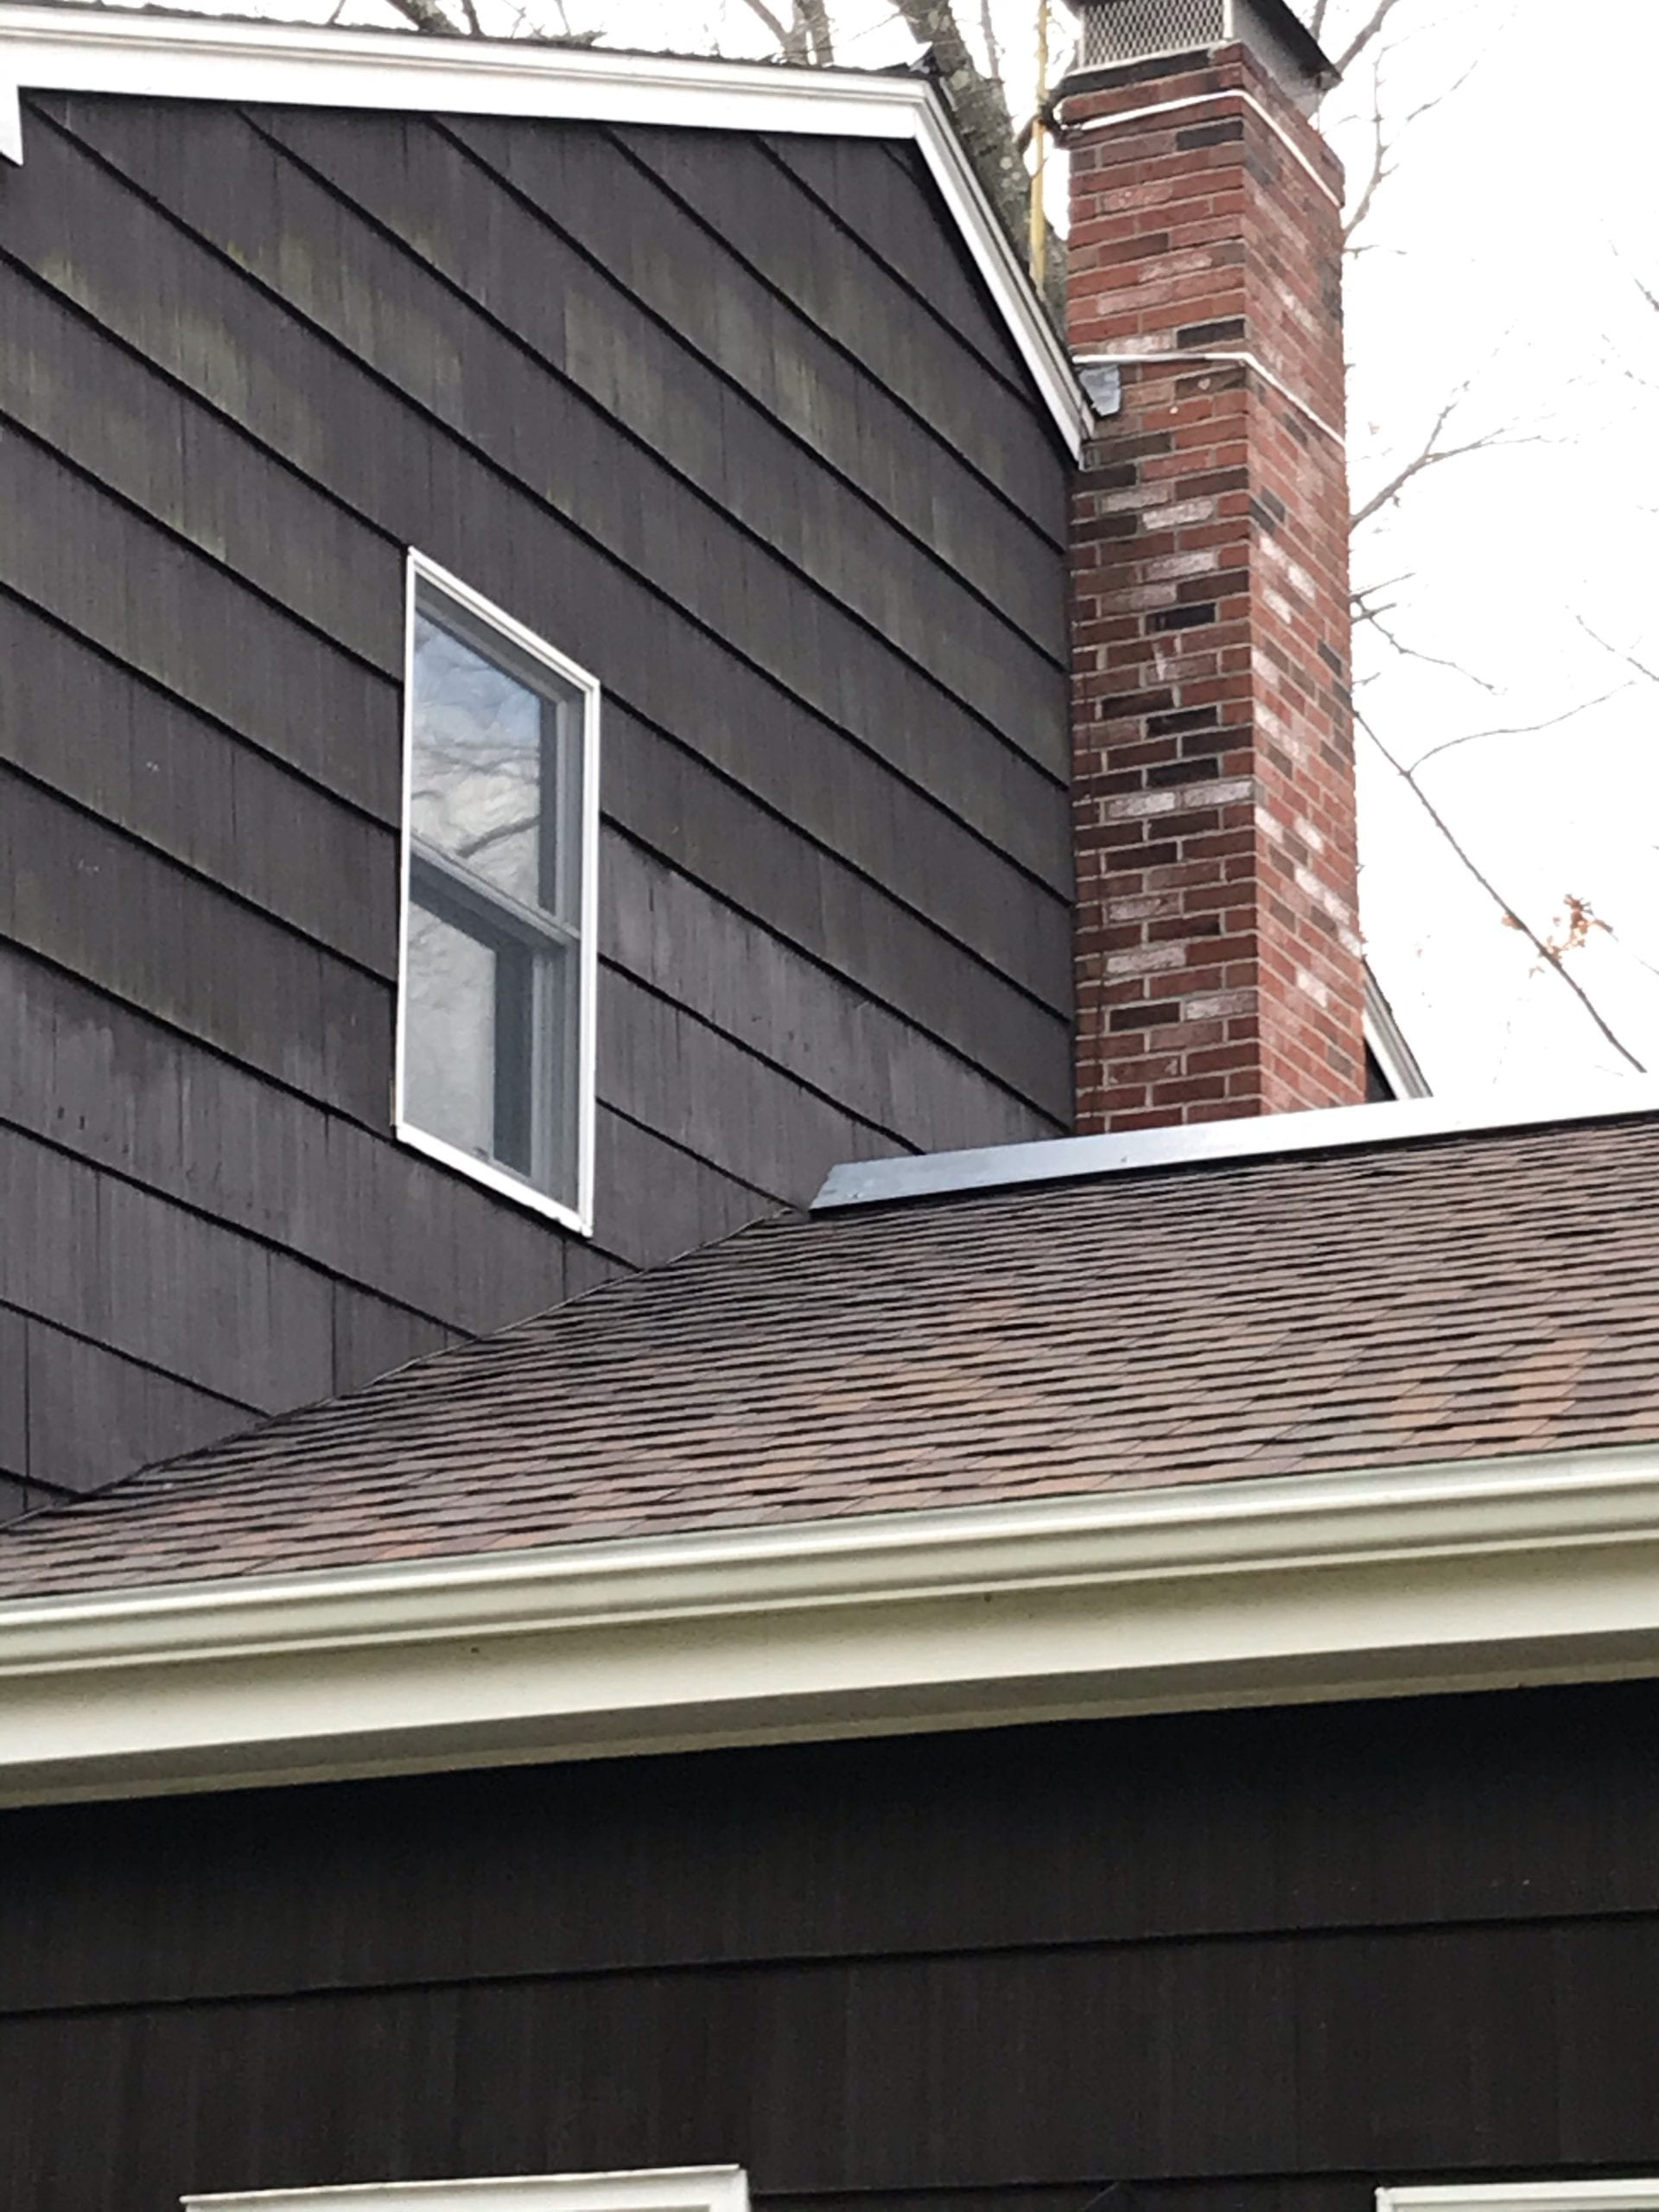 Brand new asphalt shingle roof.